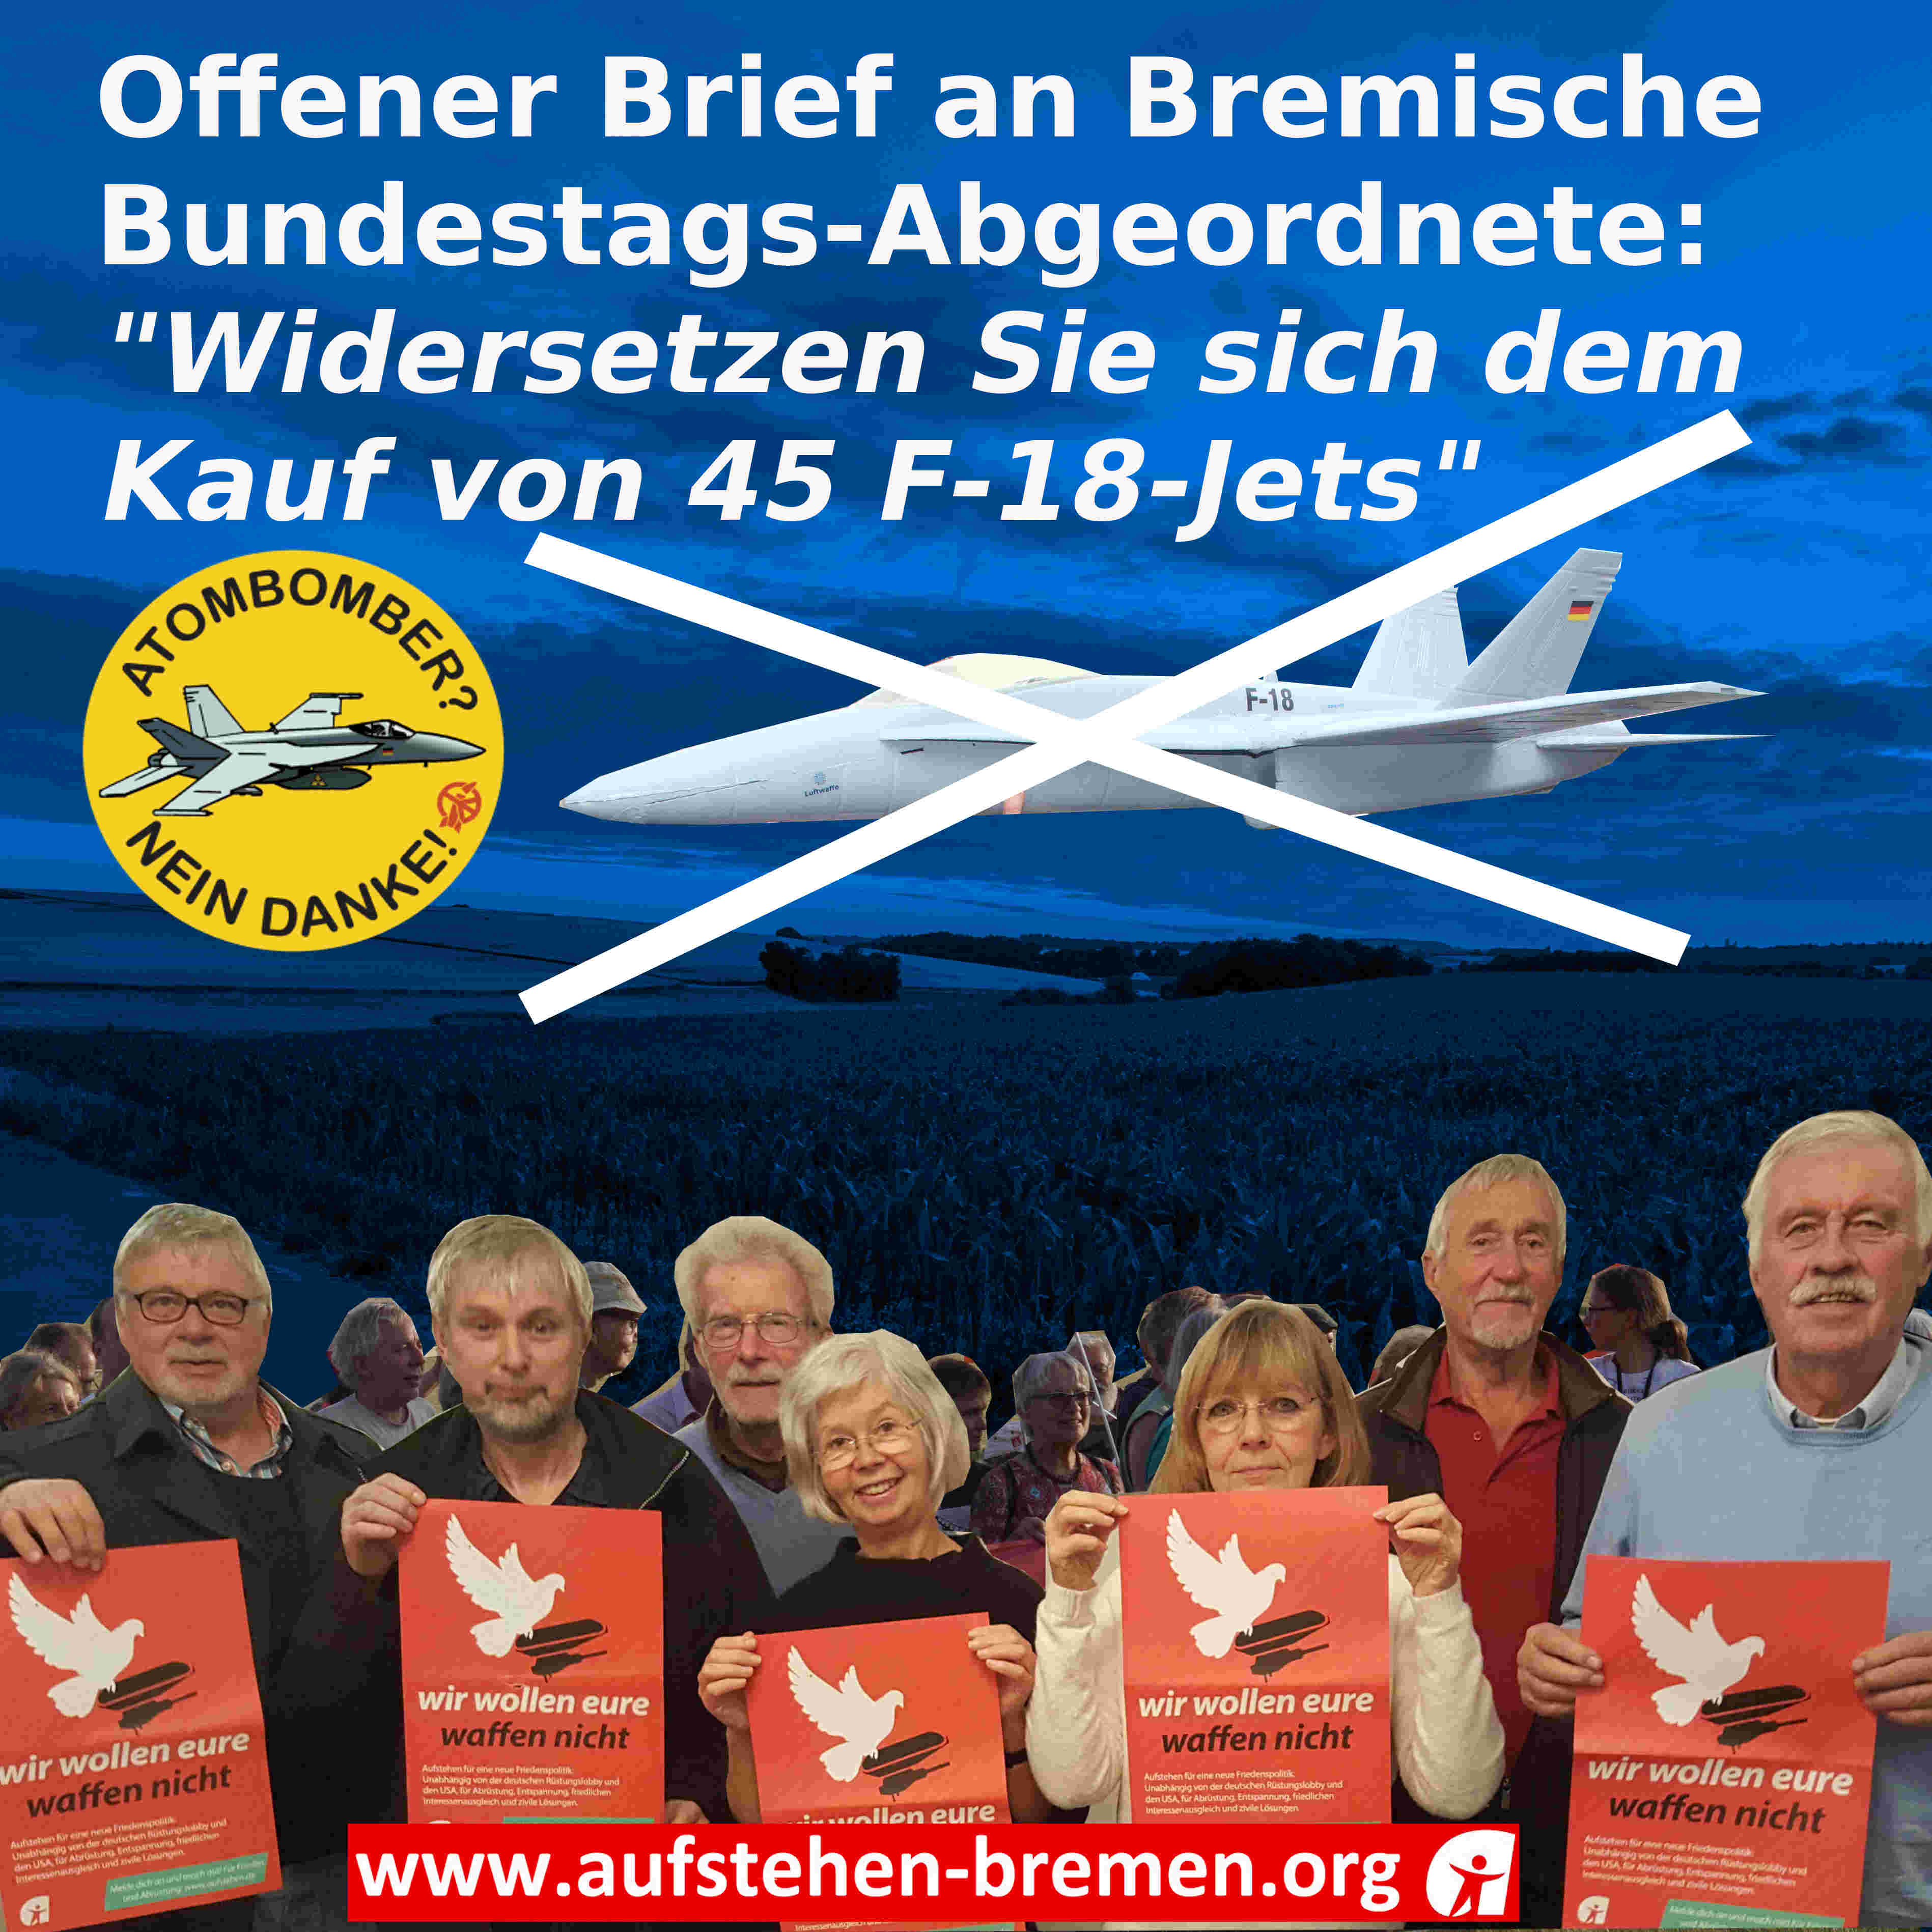 Offener Brief an Bremische Bundestags-Abgeordnete